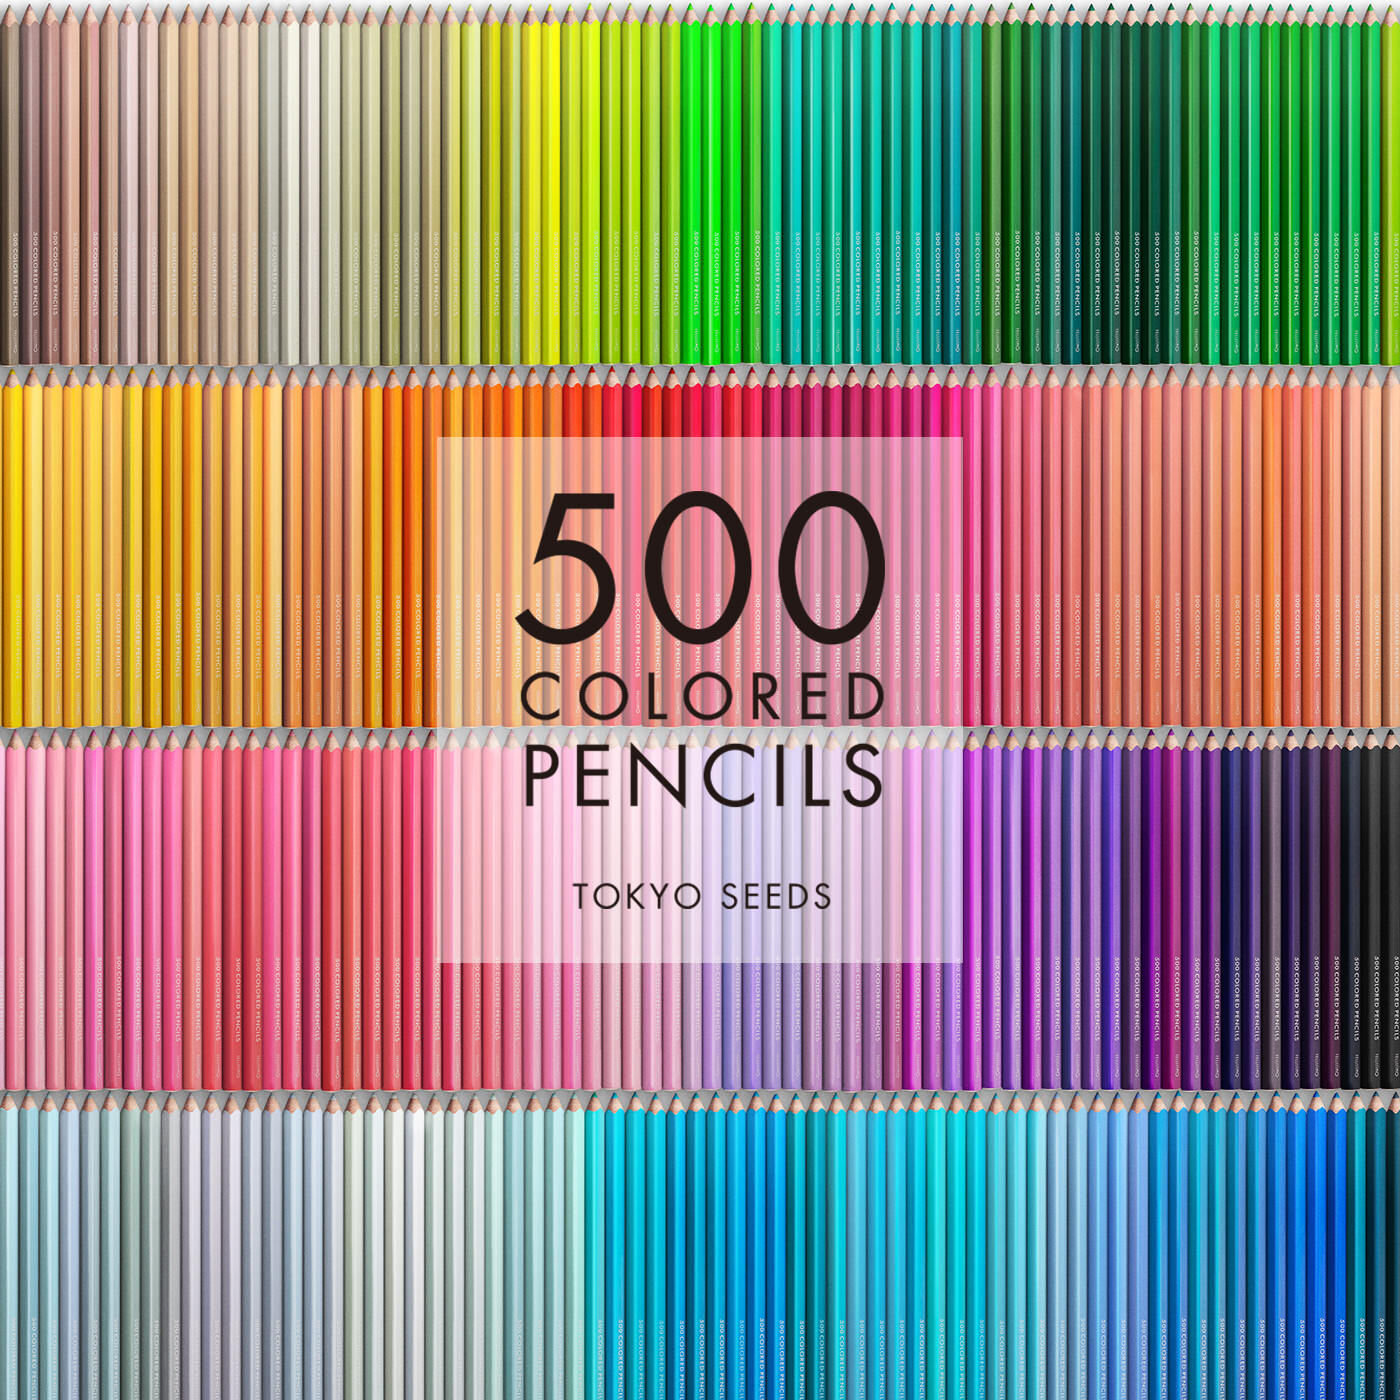 Real Stock|【391/500 PIROUETTE PERFECT】500色の色えんぴつ TOKYO SEEDS|1992年、世界初の「500色」という膨大な色数の色えんぴつが誕生して以来、その販売数は発売当初から合わせると、世界55ヵ国10万セット以上。今回、メイド・イン・ジャパンにこだわり、すべてが新しく生まれ変わって登場しました。